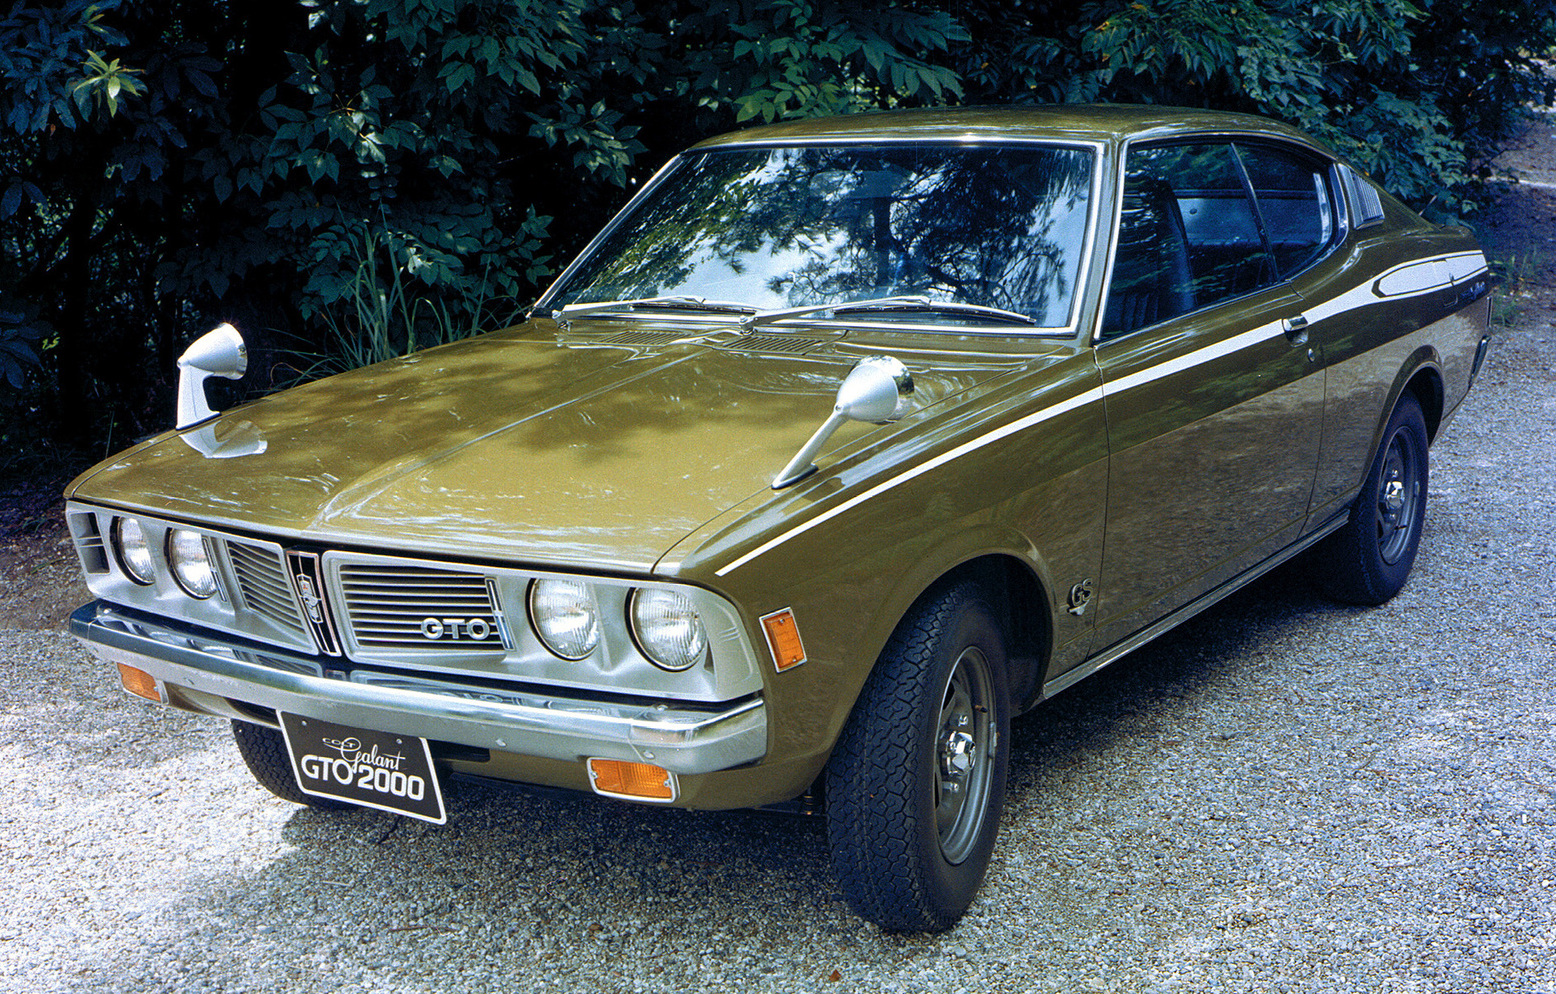 1970 Mitsubishi Galant GTO front